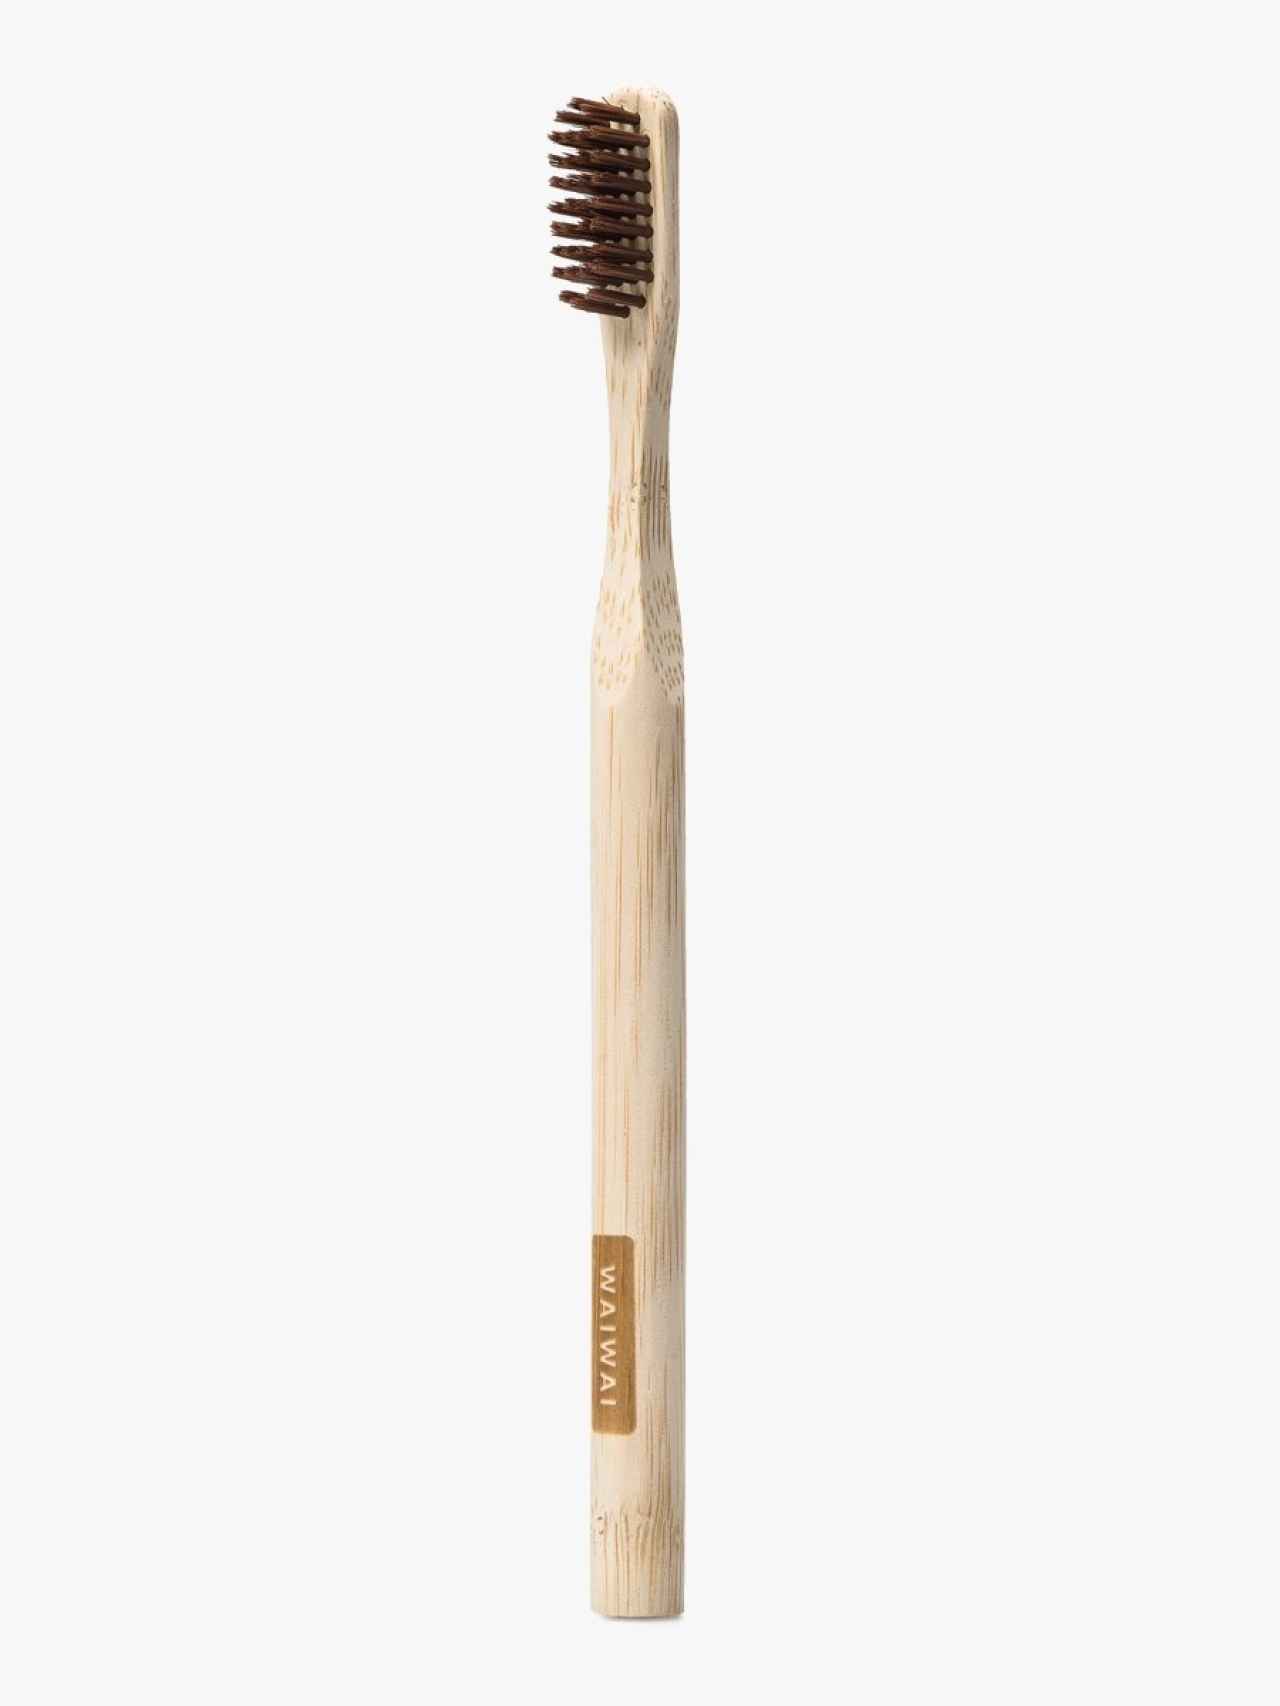 Cepillo de dientes de madera de Wai Wai.